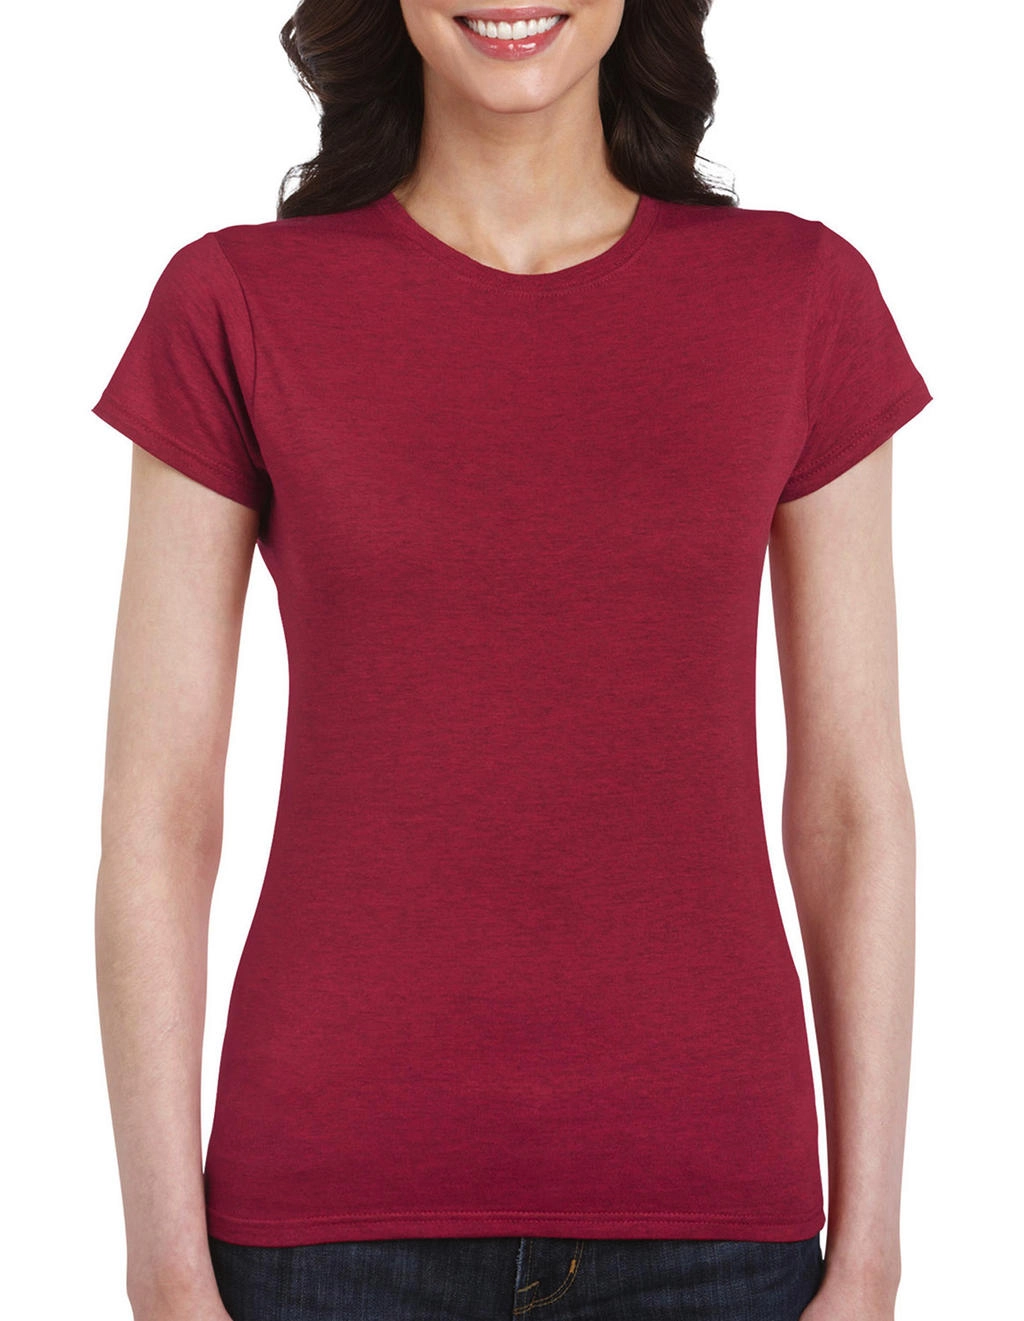 Softstyle® Ladies` T-Shirt zum Besticken und Bedrucken in der Farbe Antique Cherry Red mit Ihren Logo, Schriftzug oder Motiv.